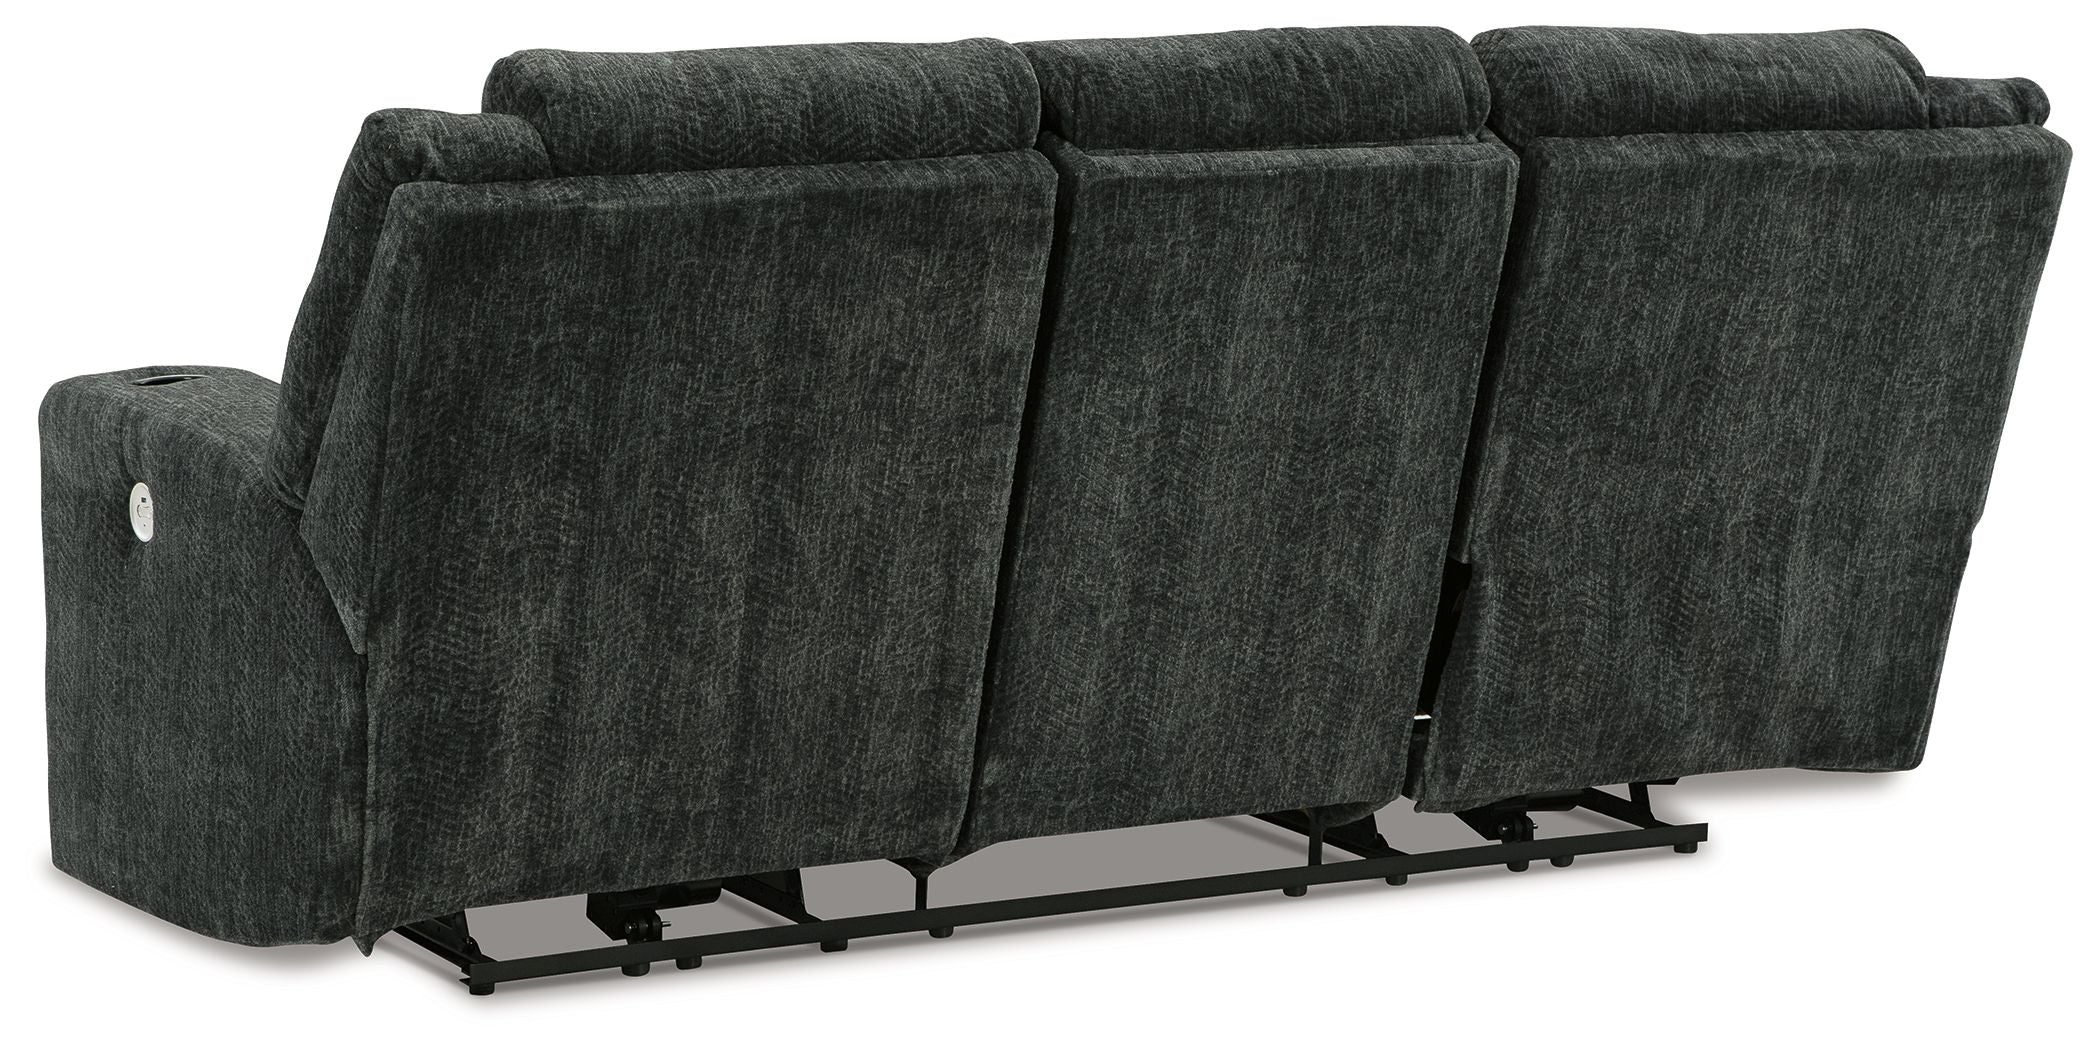 Martinglenn - Ebony - Power Reclining Sofa - Fabric